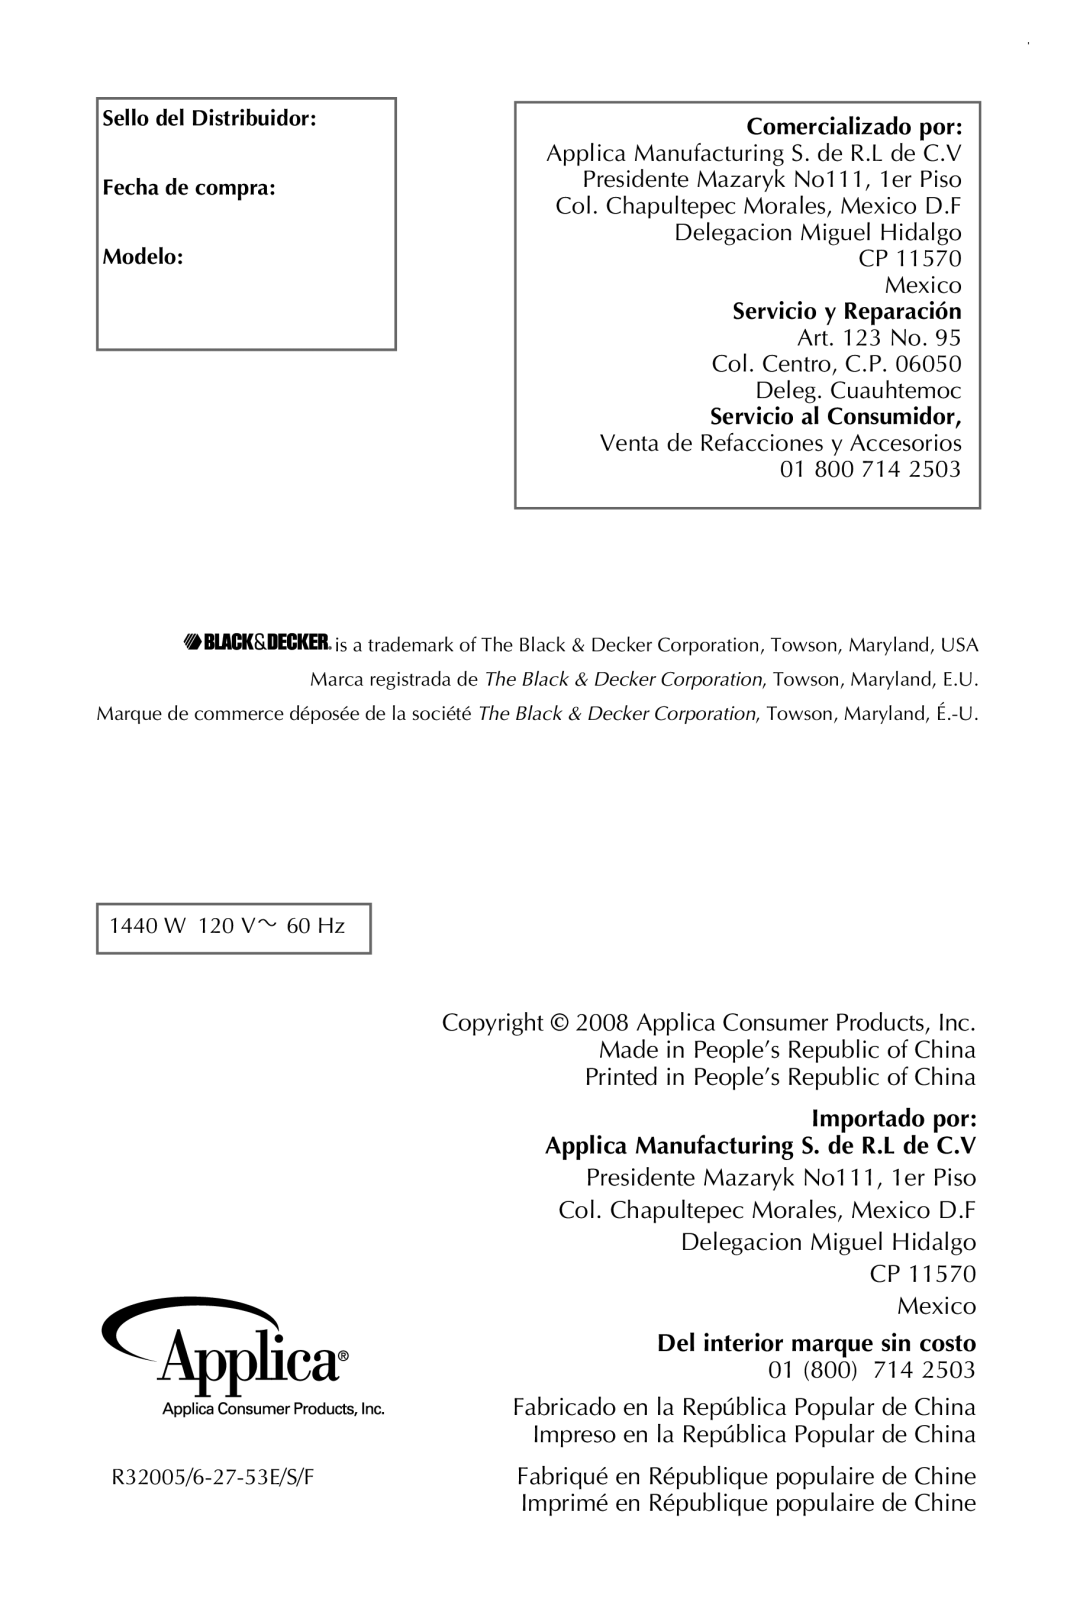 Black & Decker CTO649 manual Servicio al Consumidor, Venta de Refacciones y Accesorios 01, Del interior marque sin costo 